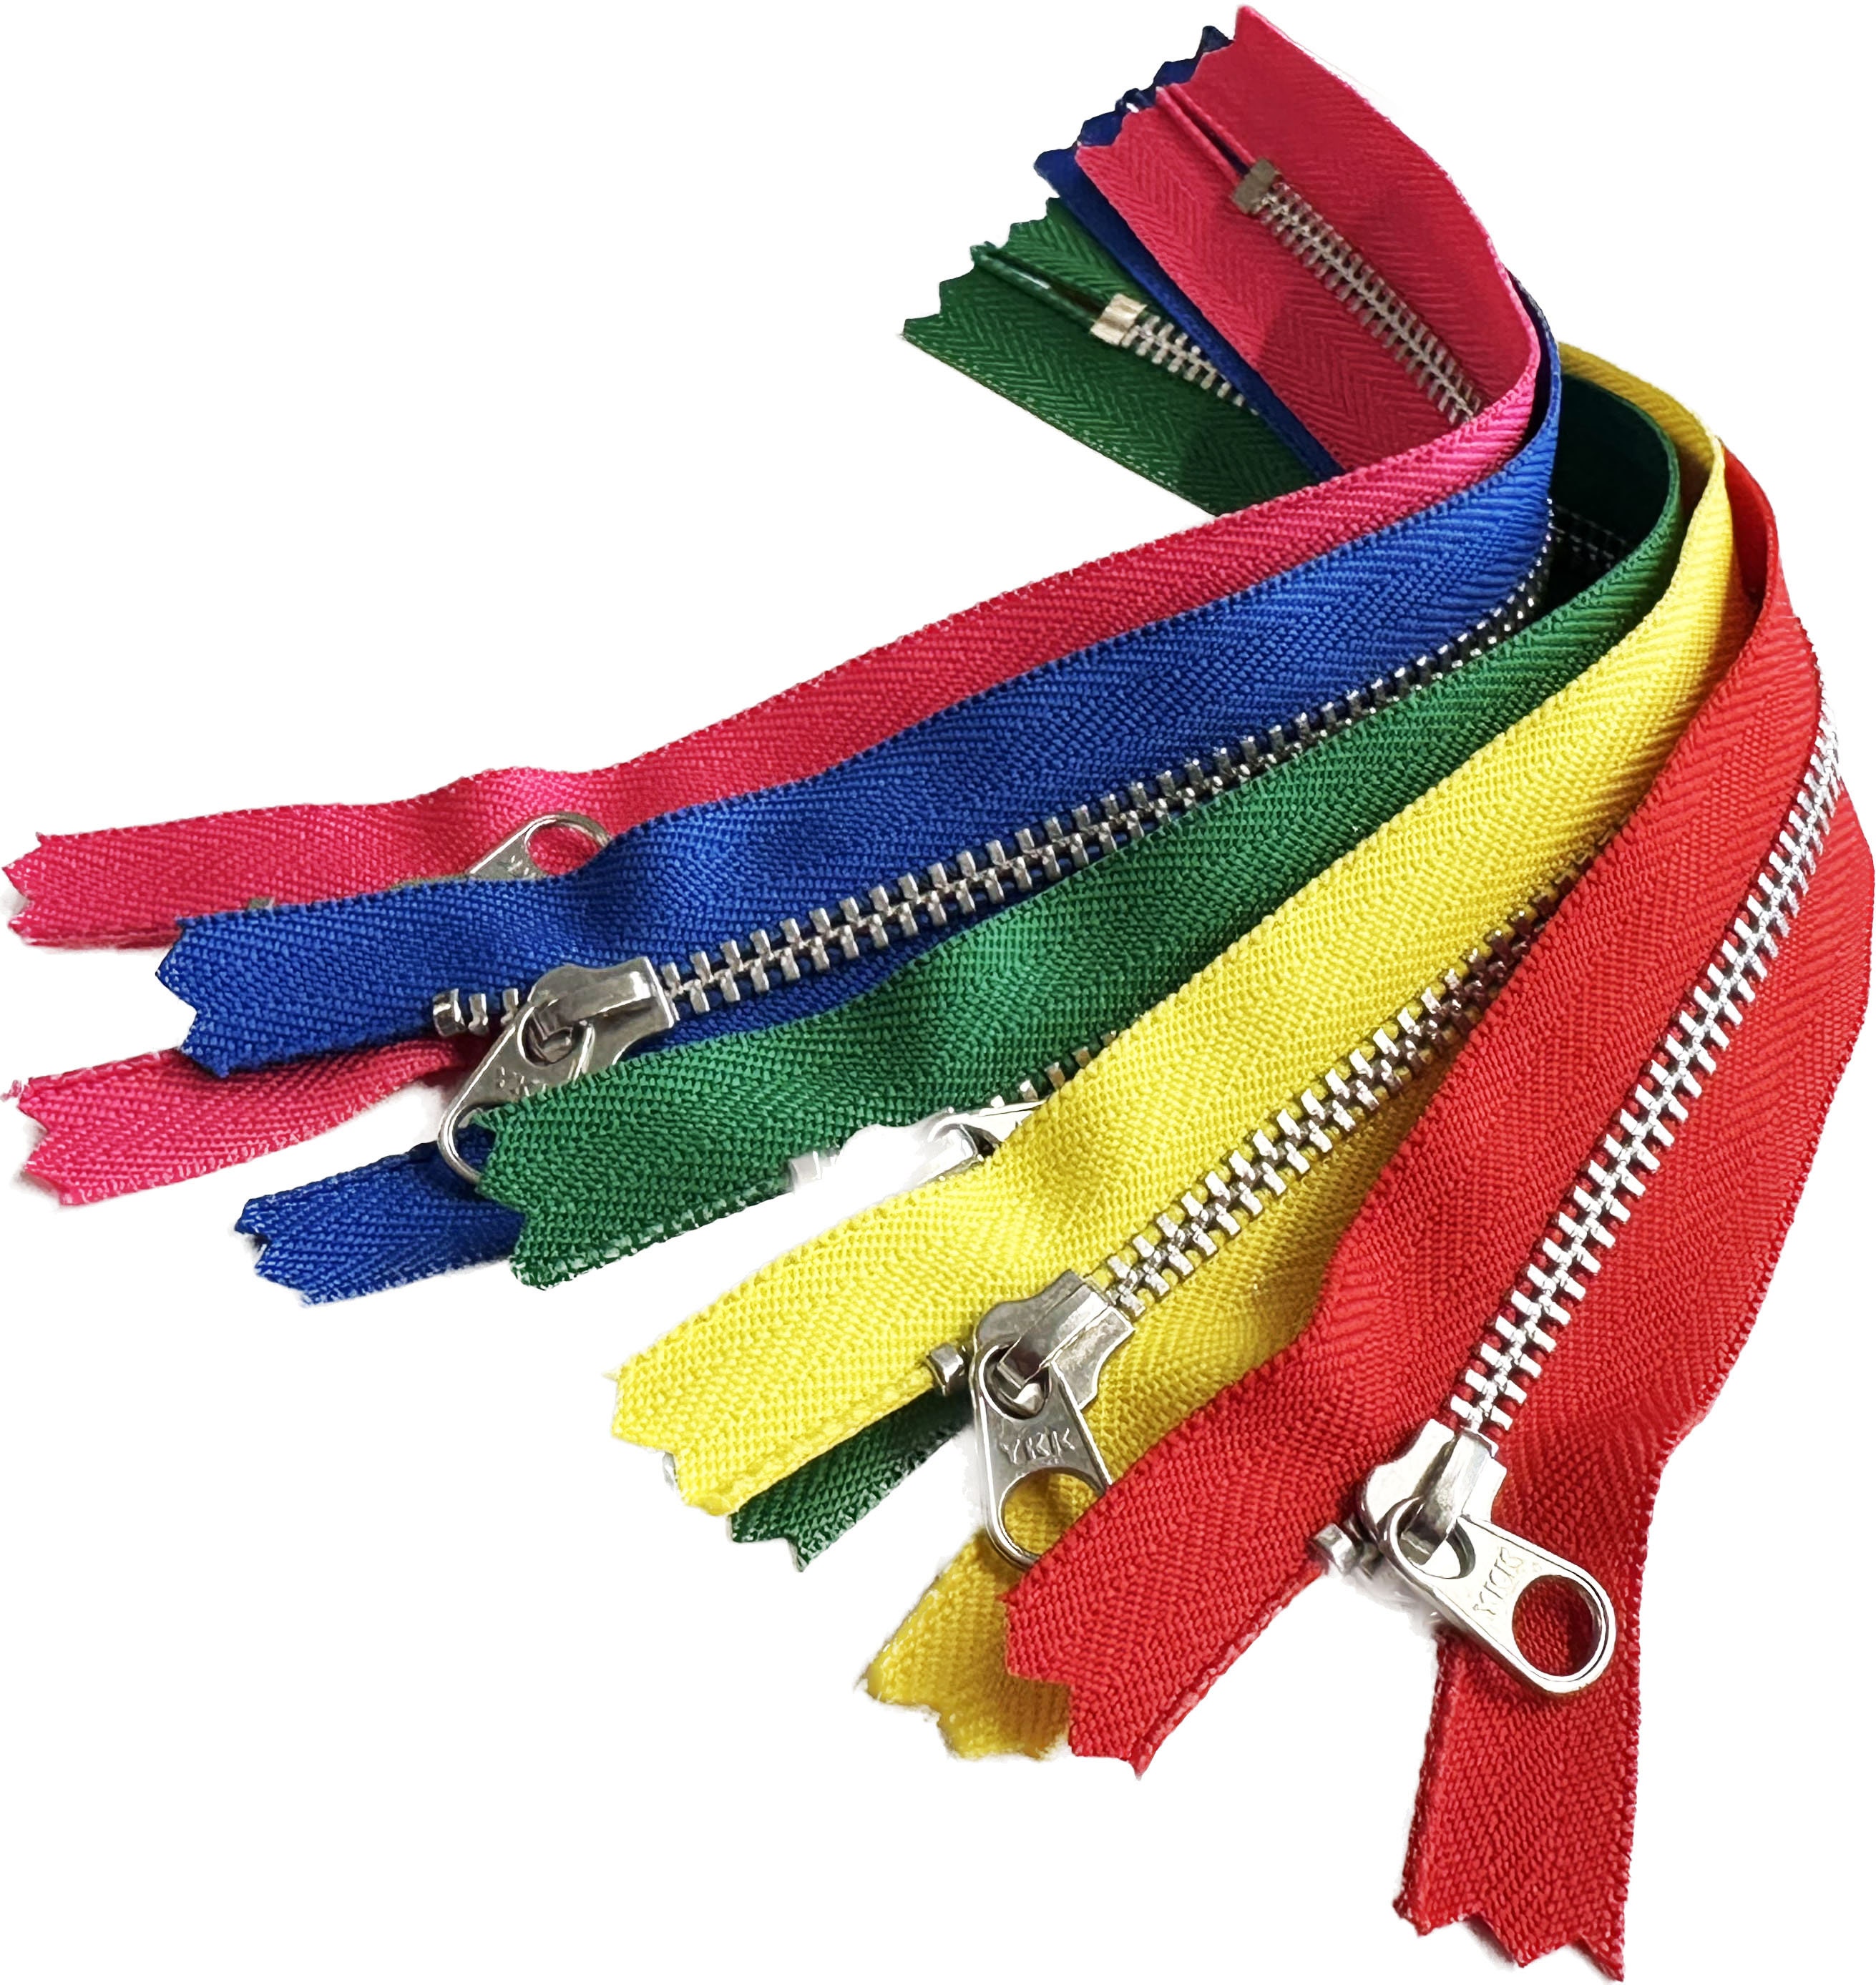 8 cremalleras separadoras de YKK para coser, abrigos, chaquetas,  cremalleras, de plástico resistente, a granel en 8 colores, fabricadas en  los Estados